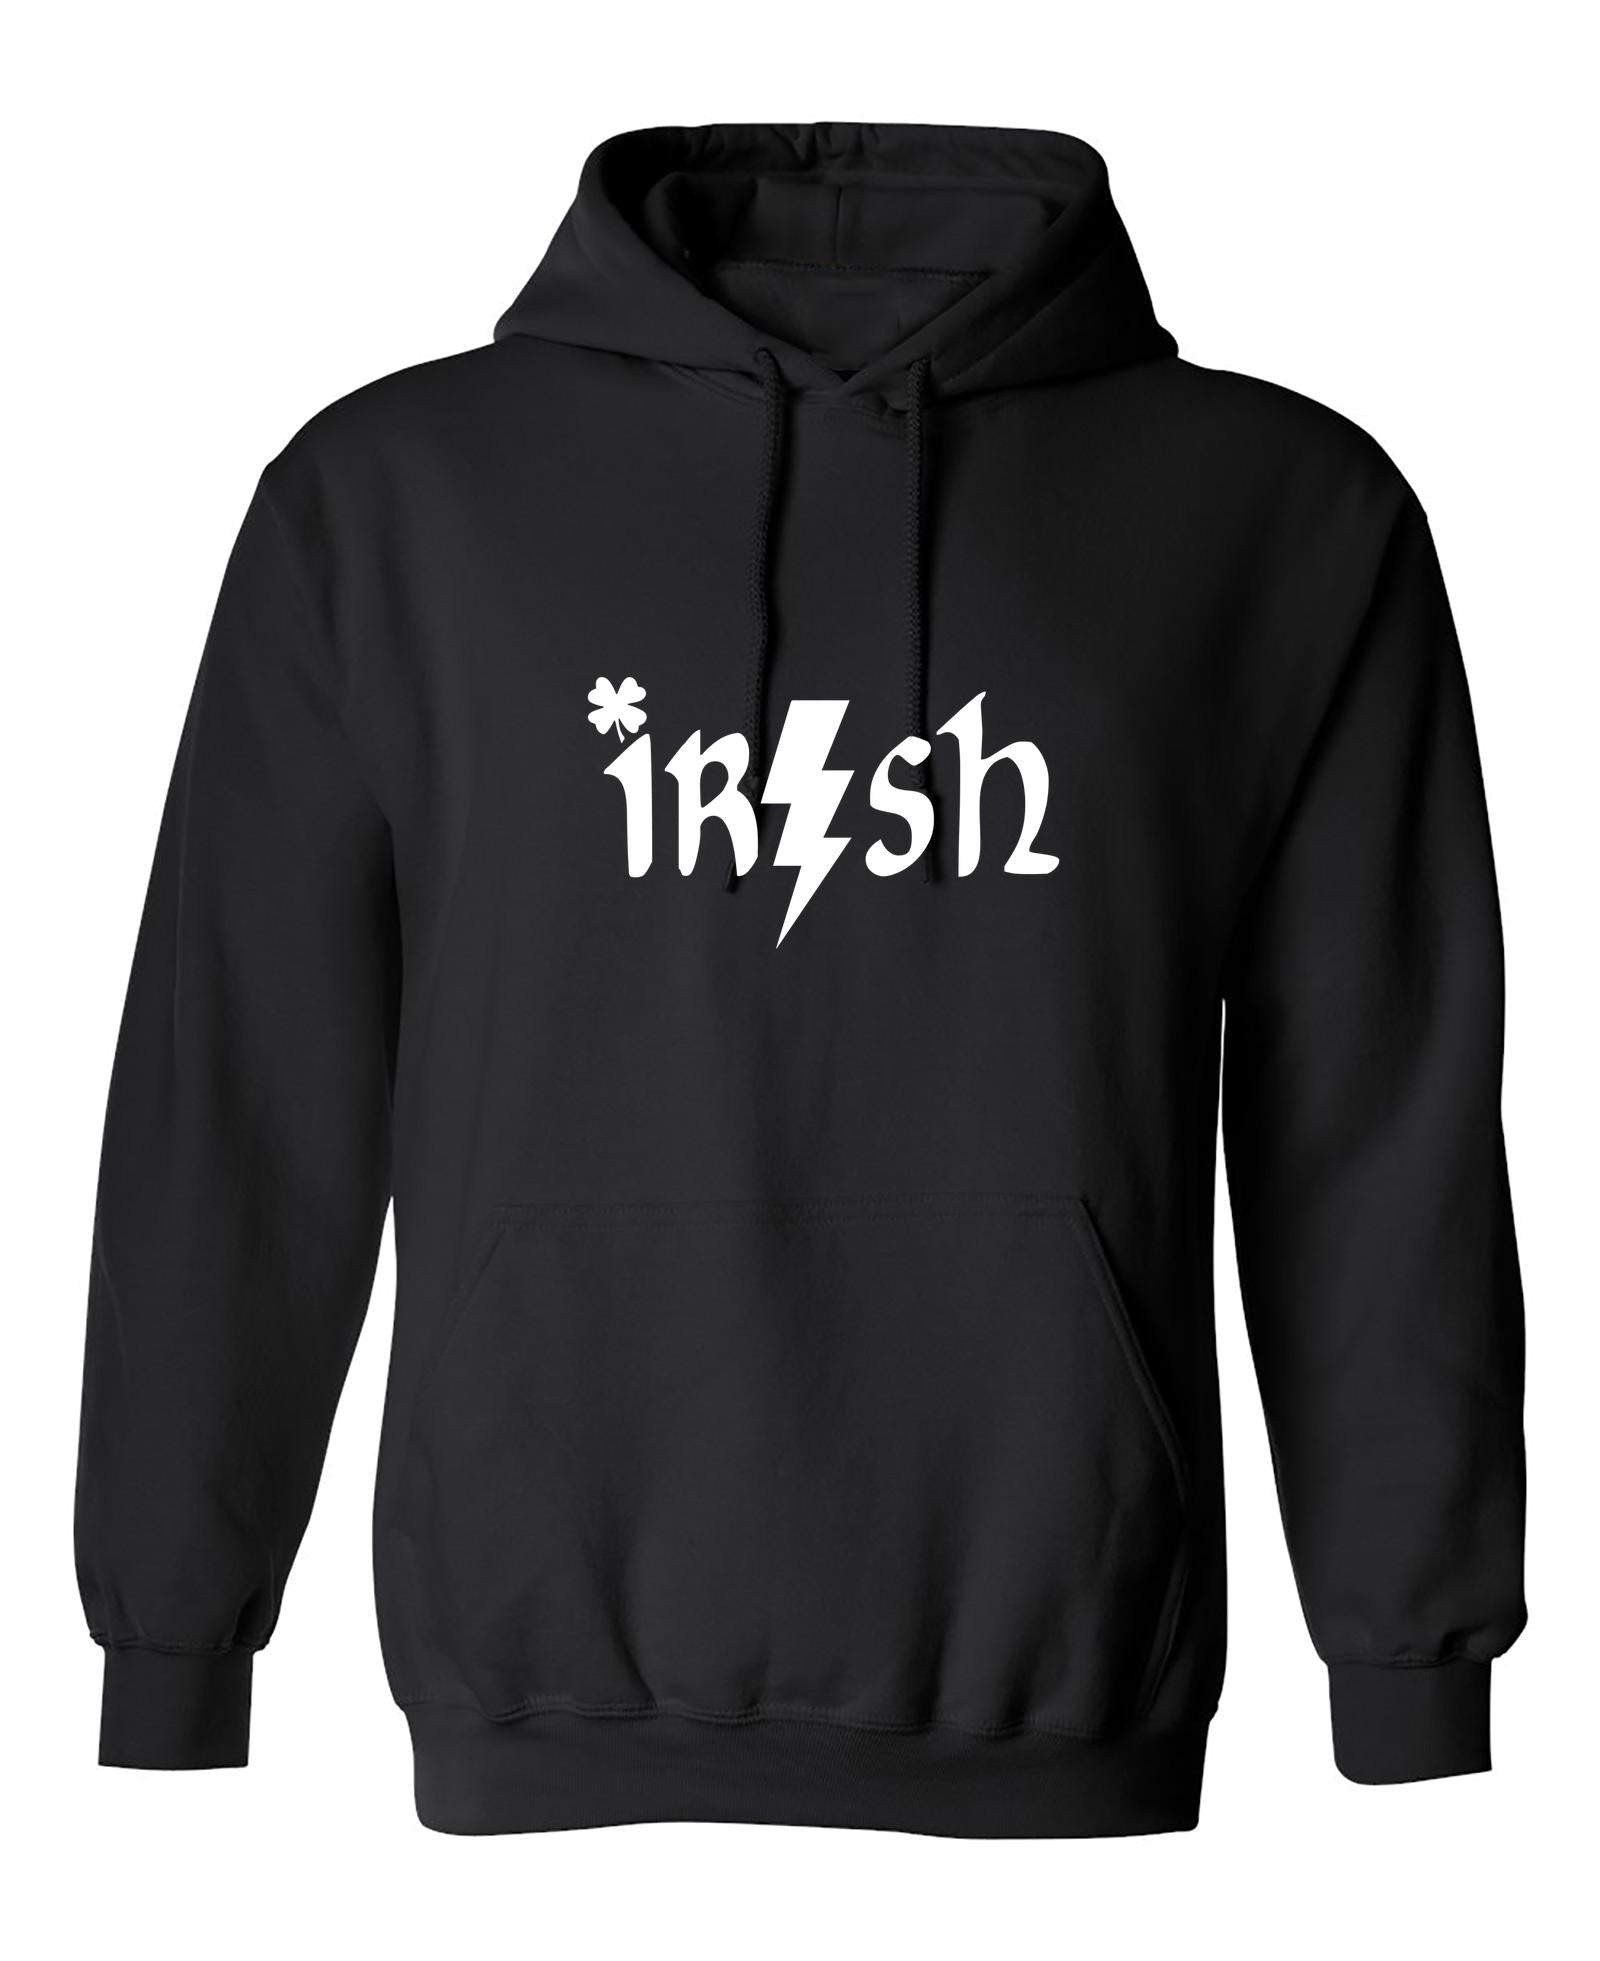 Funny T-Shirts design "IRISH"